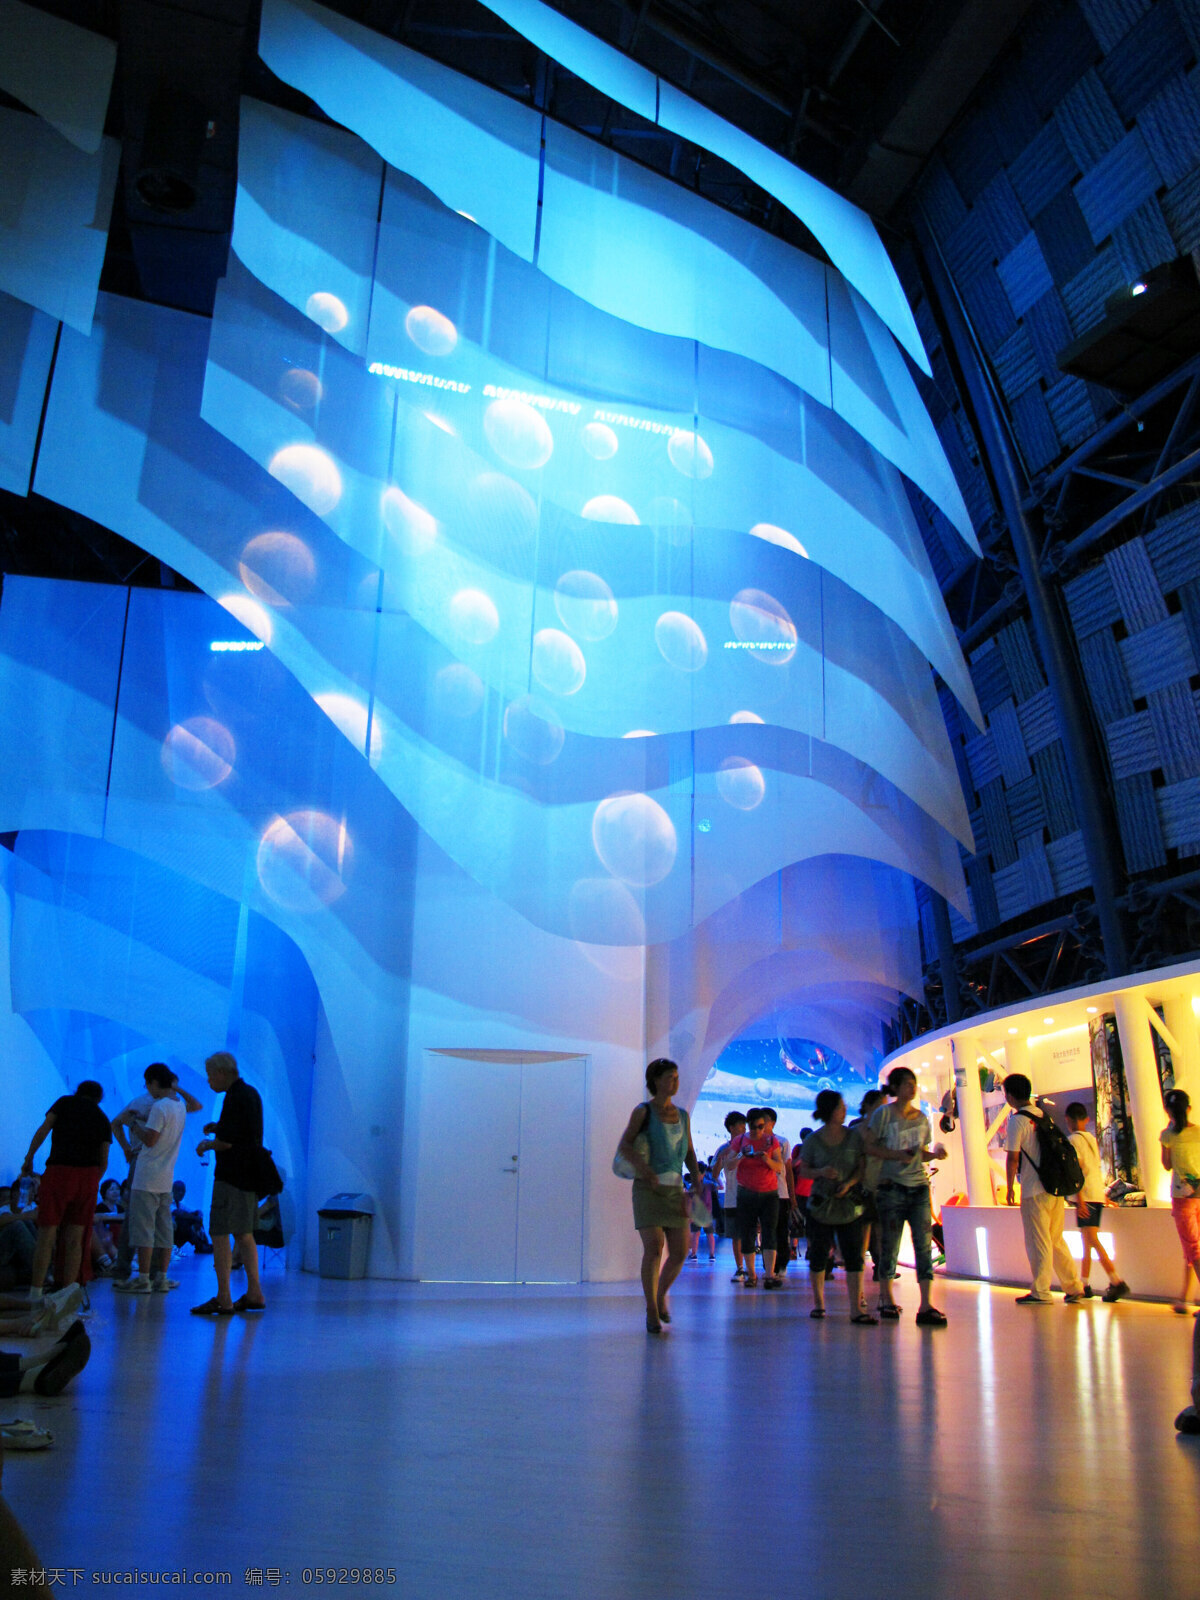 上海 世博会 芬兰 馆内 景 芬兰馆 欧洲 内景 蓝色 场馆 展览 海洋 馆区 国内旅游 旅游摄影